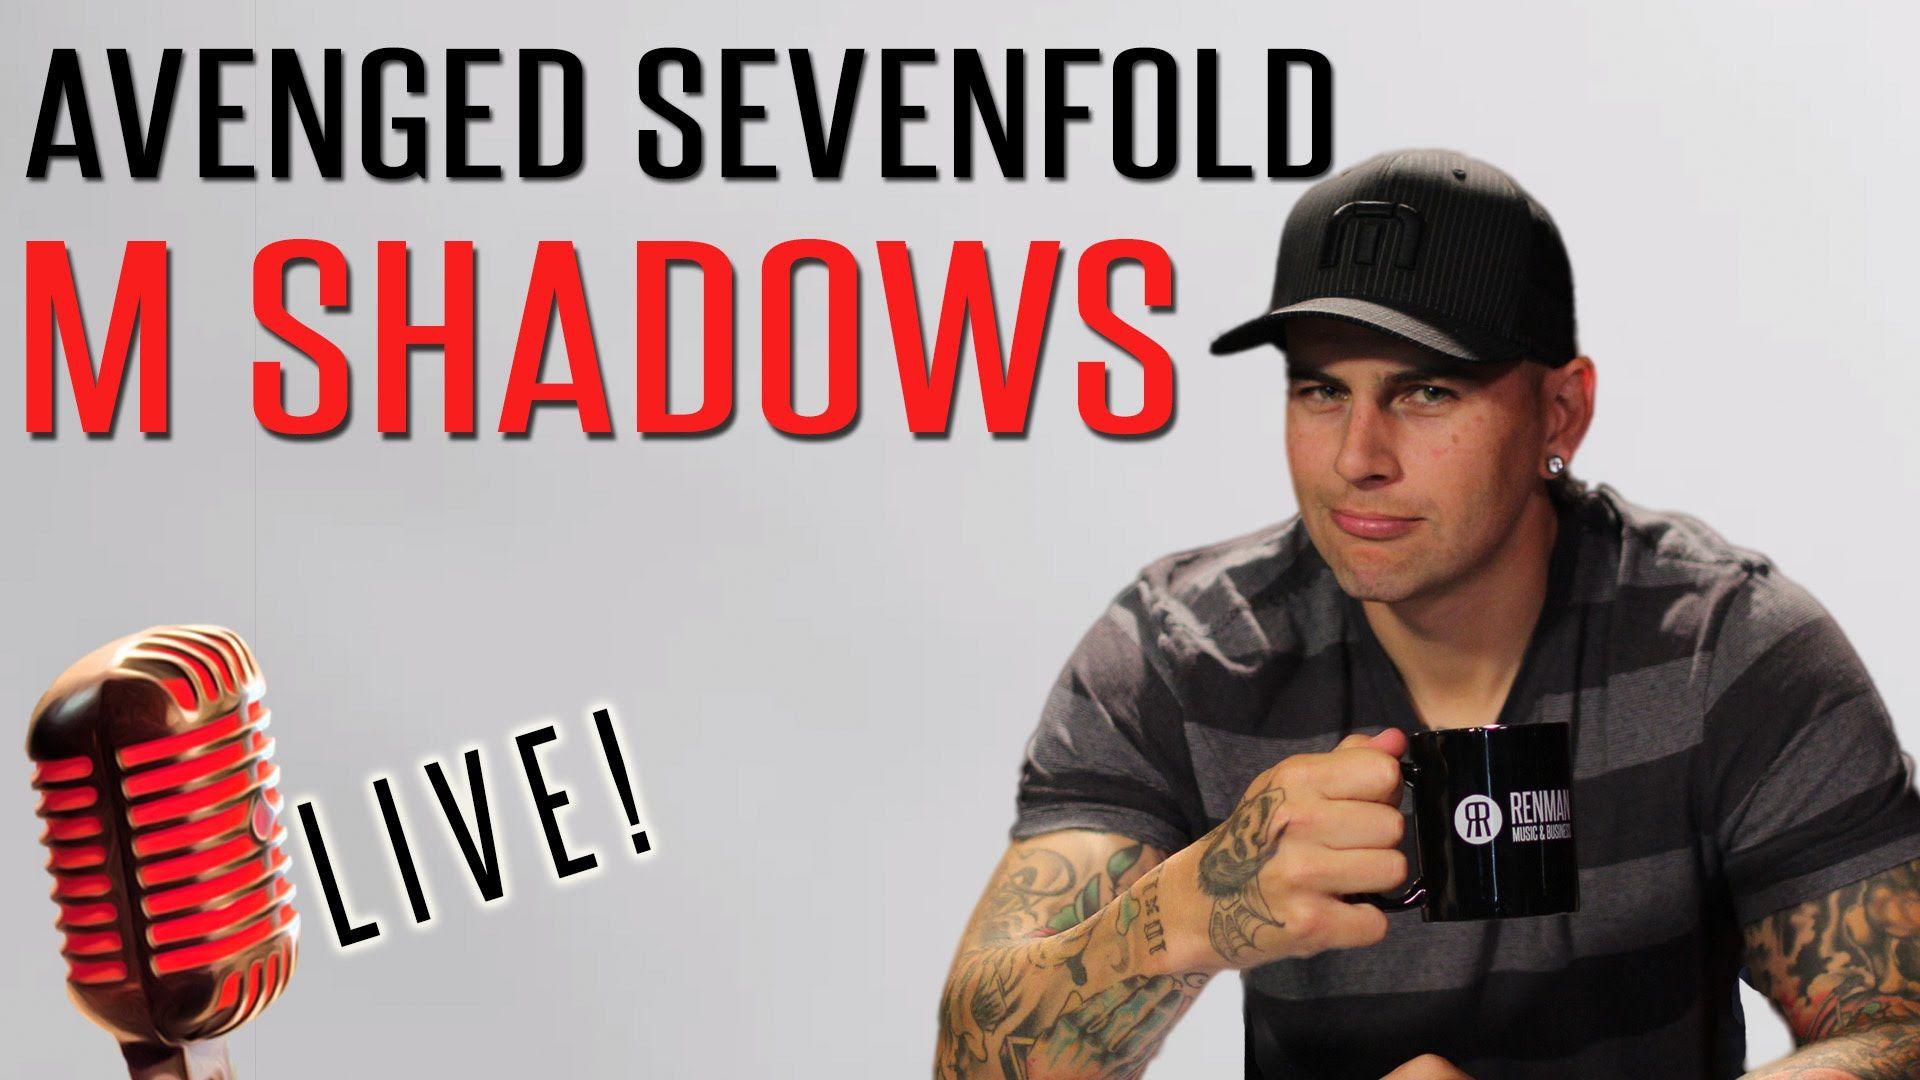 M Shadows, Avenged Sevenfold Singer